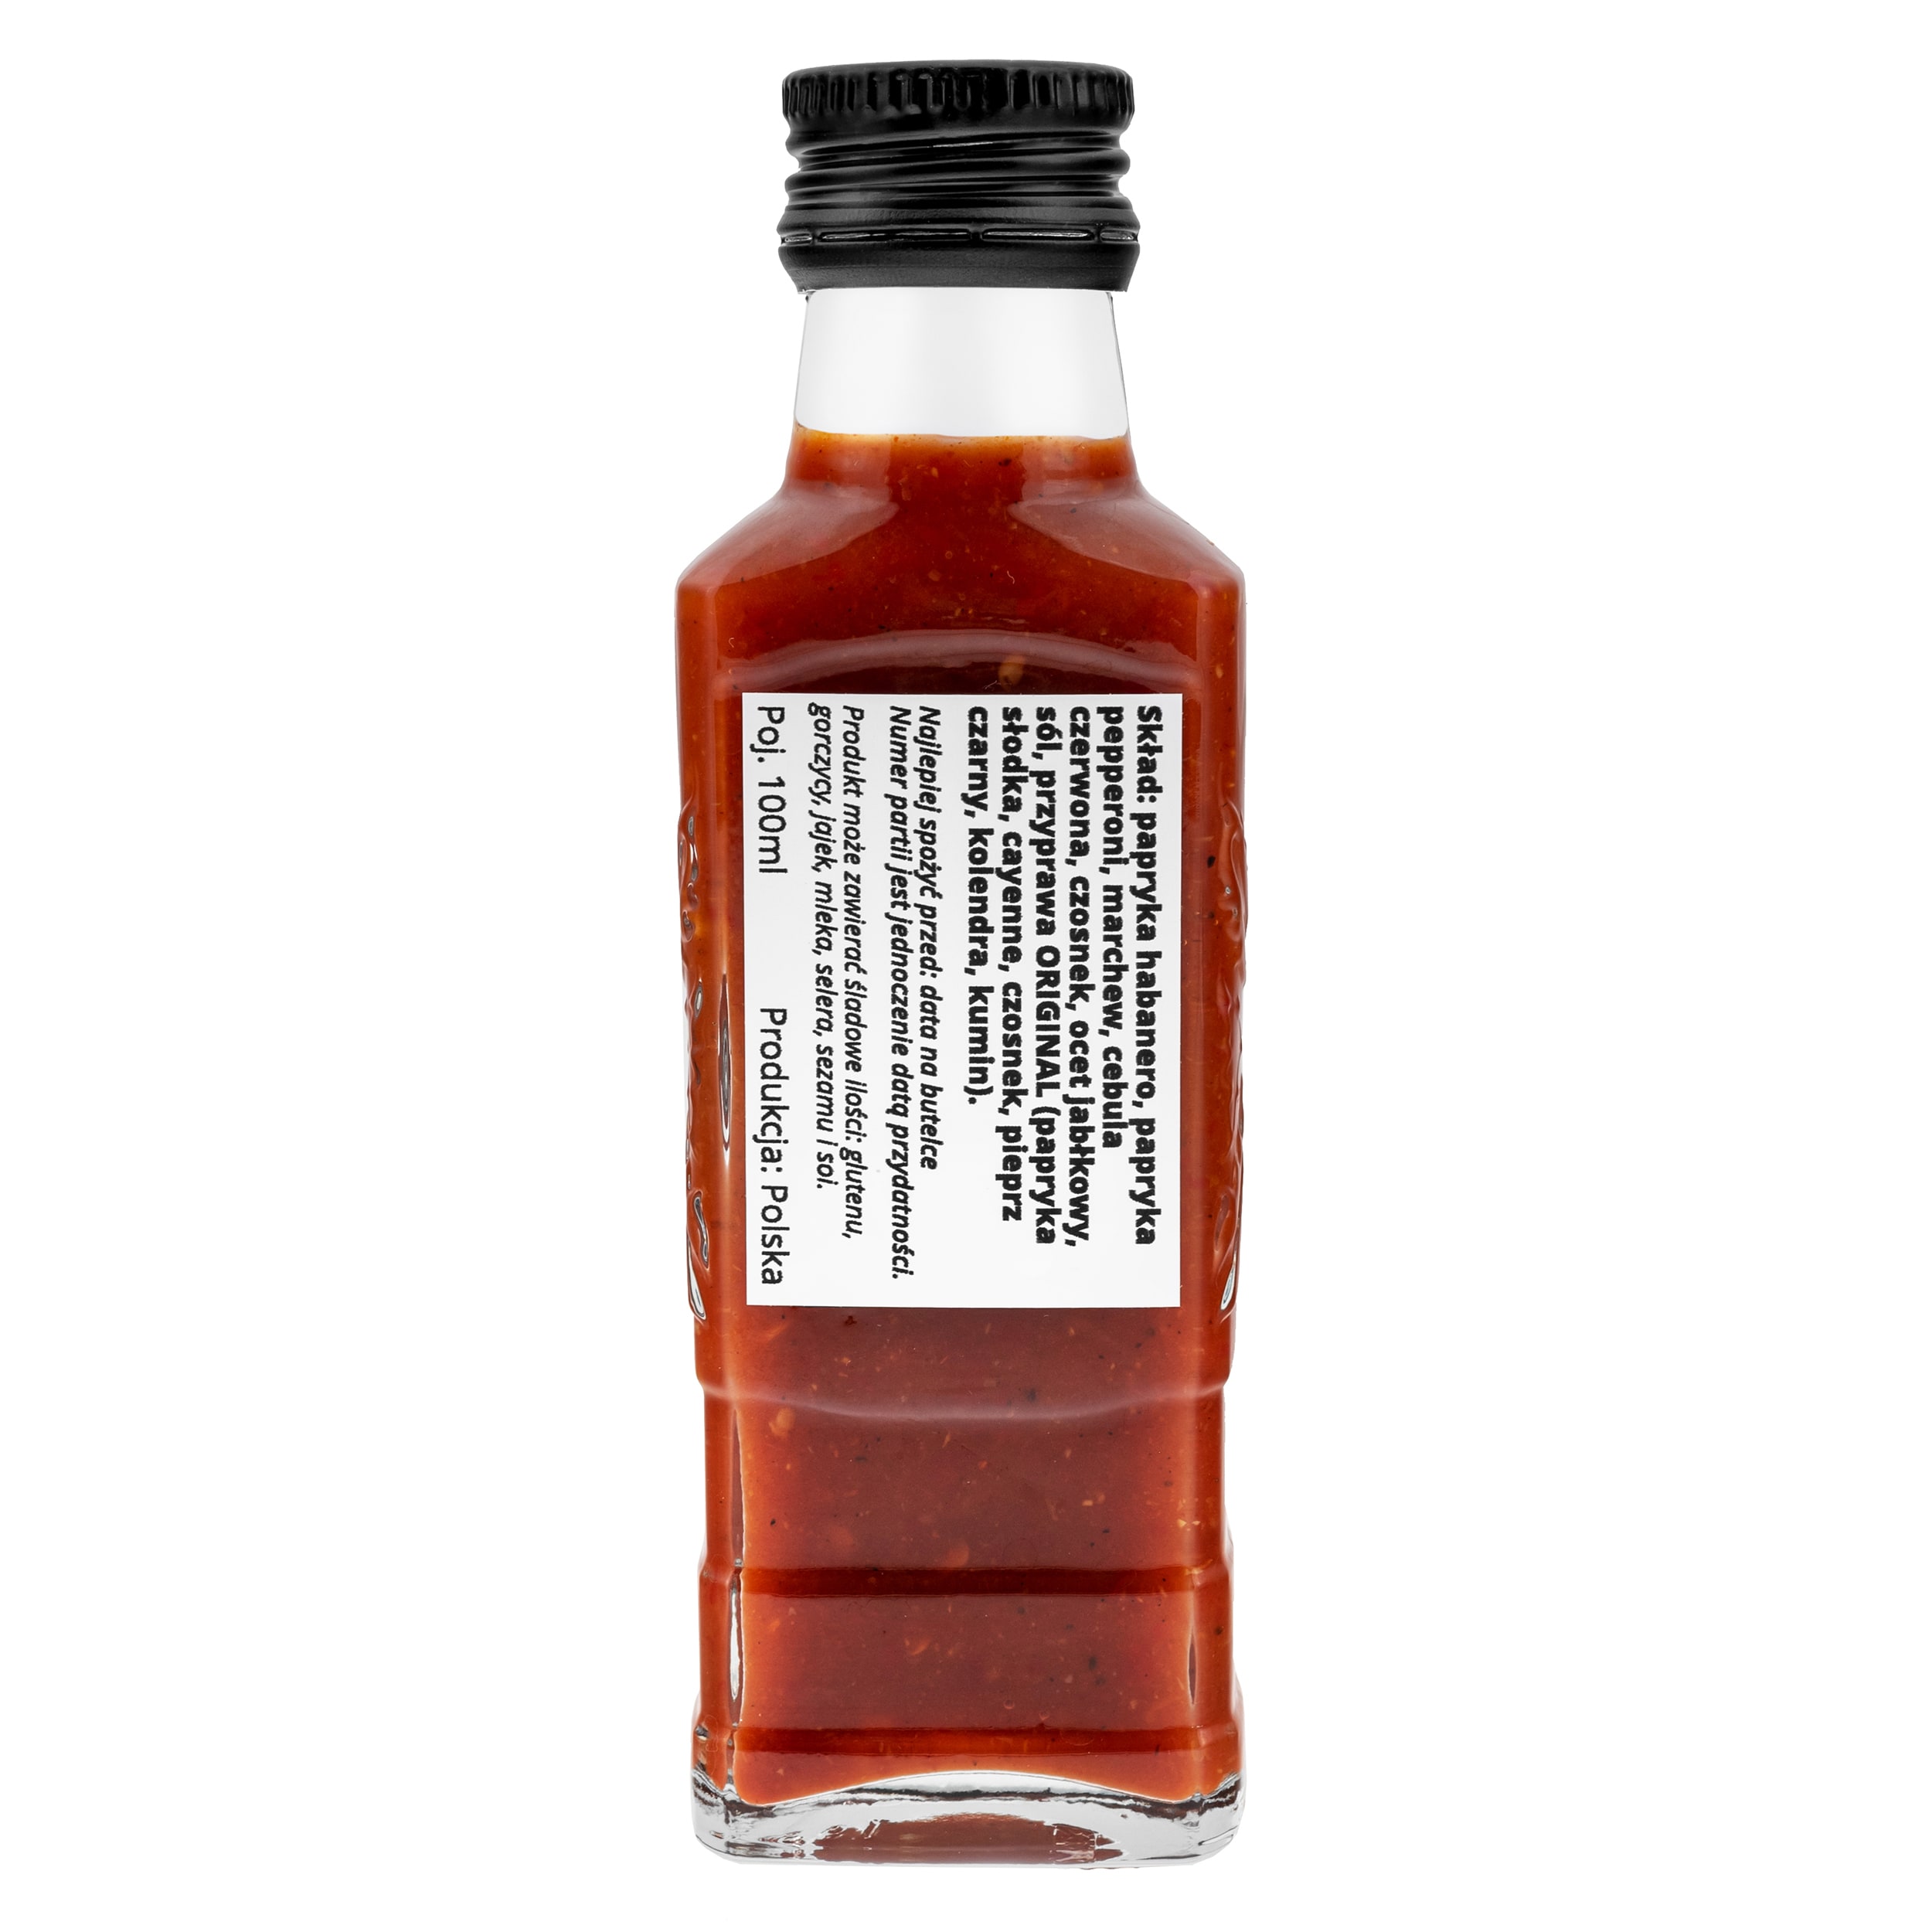 Sos Kuchnia Kwasiora Original Hot Sauce - 100 ml